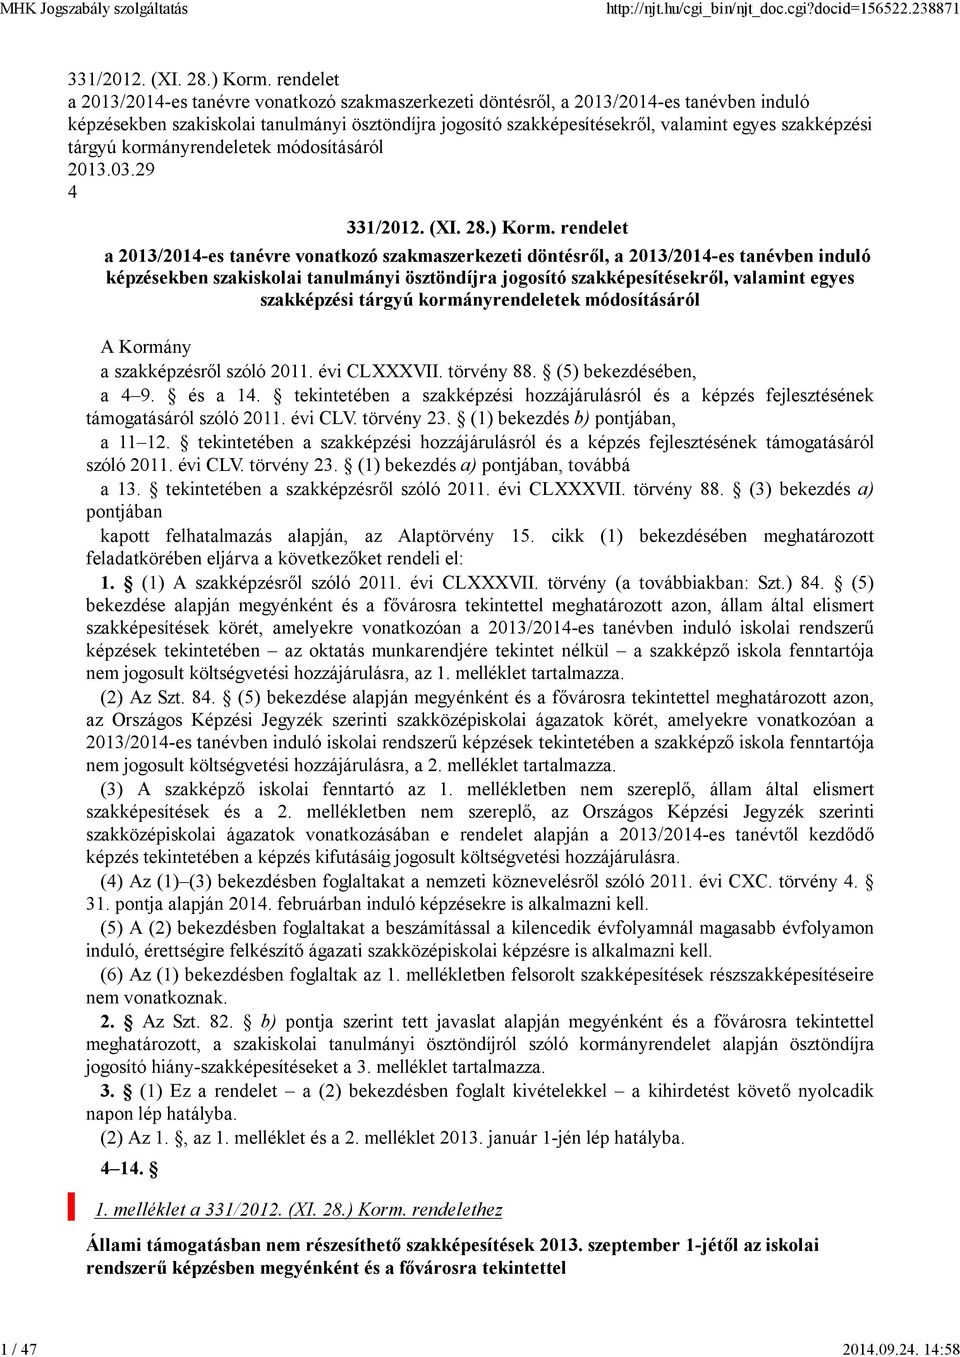 szakképzési tárgyú kormányrendeletek módosításáról 2013.03.29 4 331/2012. (XI. 28.) Korm.  szakképzési tárgyú kormányrendeletek módosításáról A Kormány a szakképzésről szóló 2011. évi CLXXXVII.